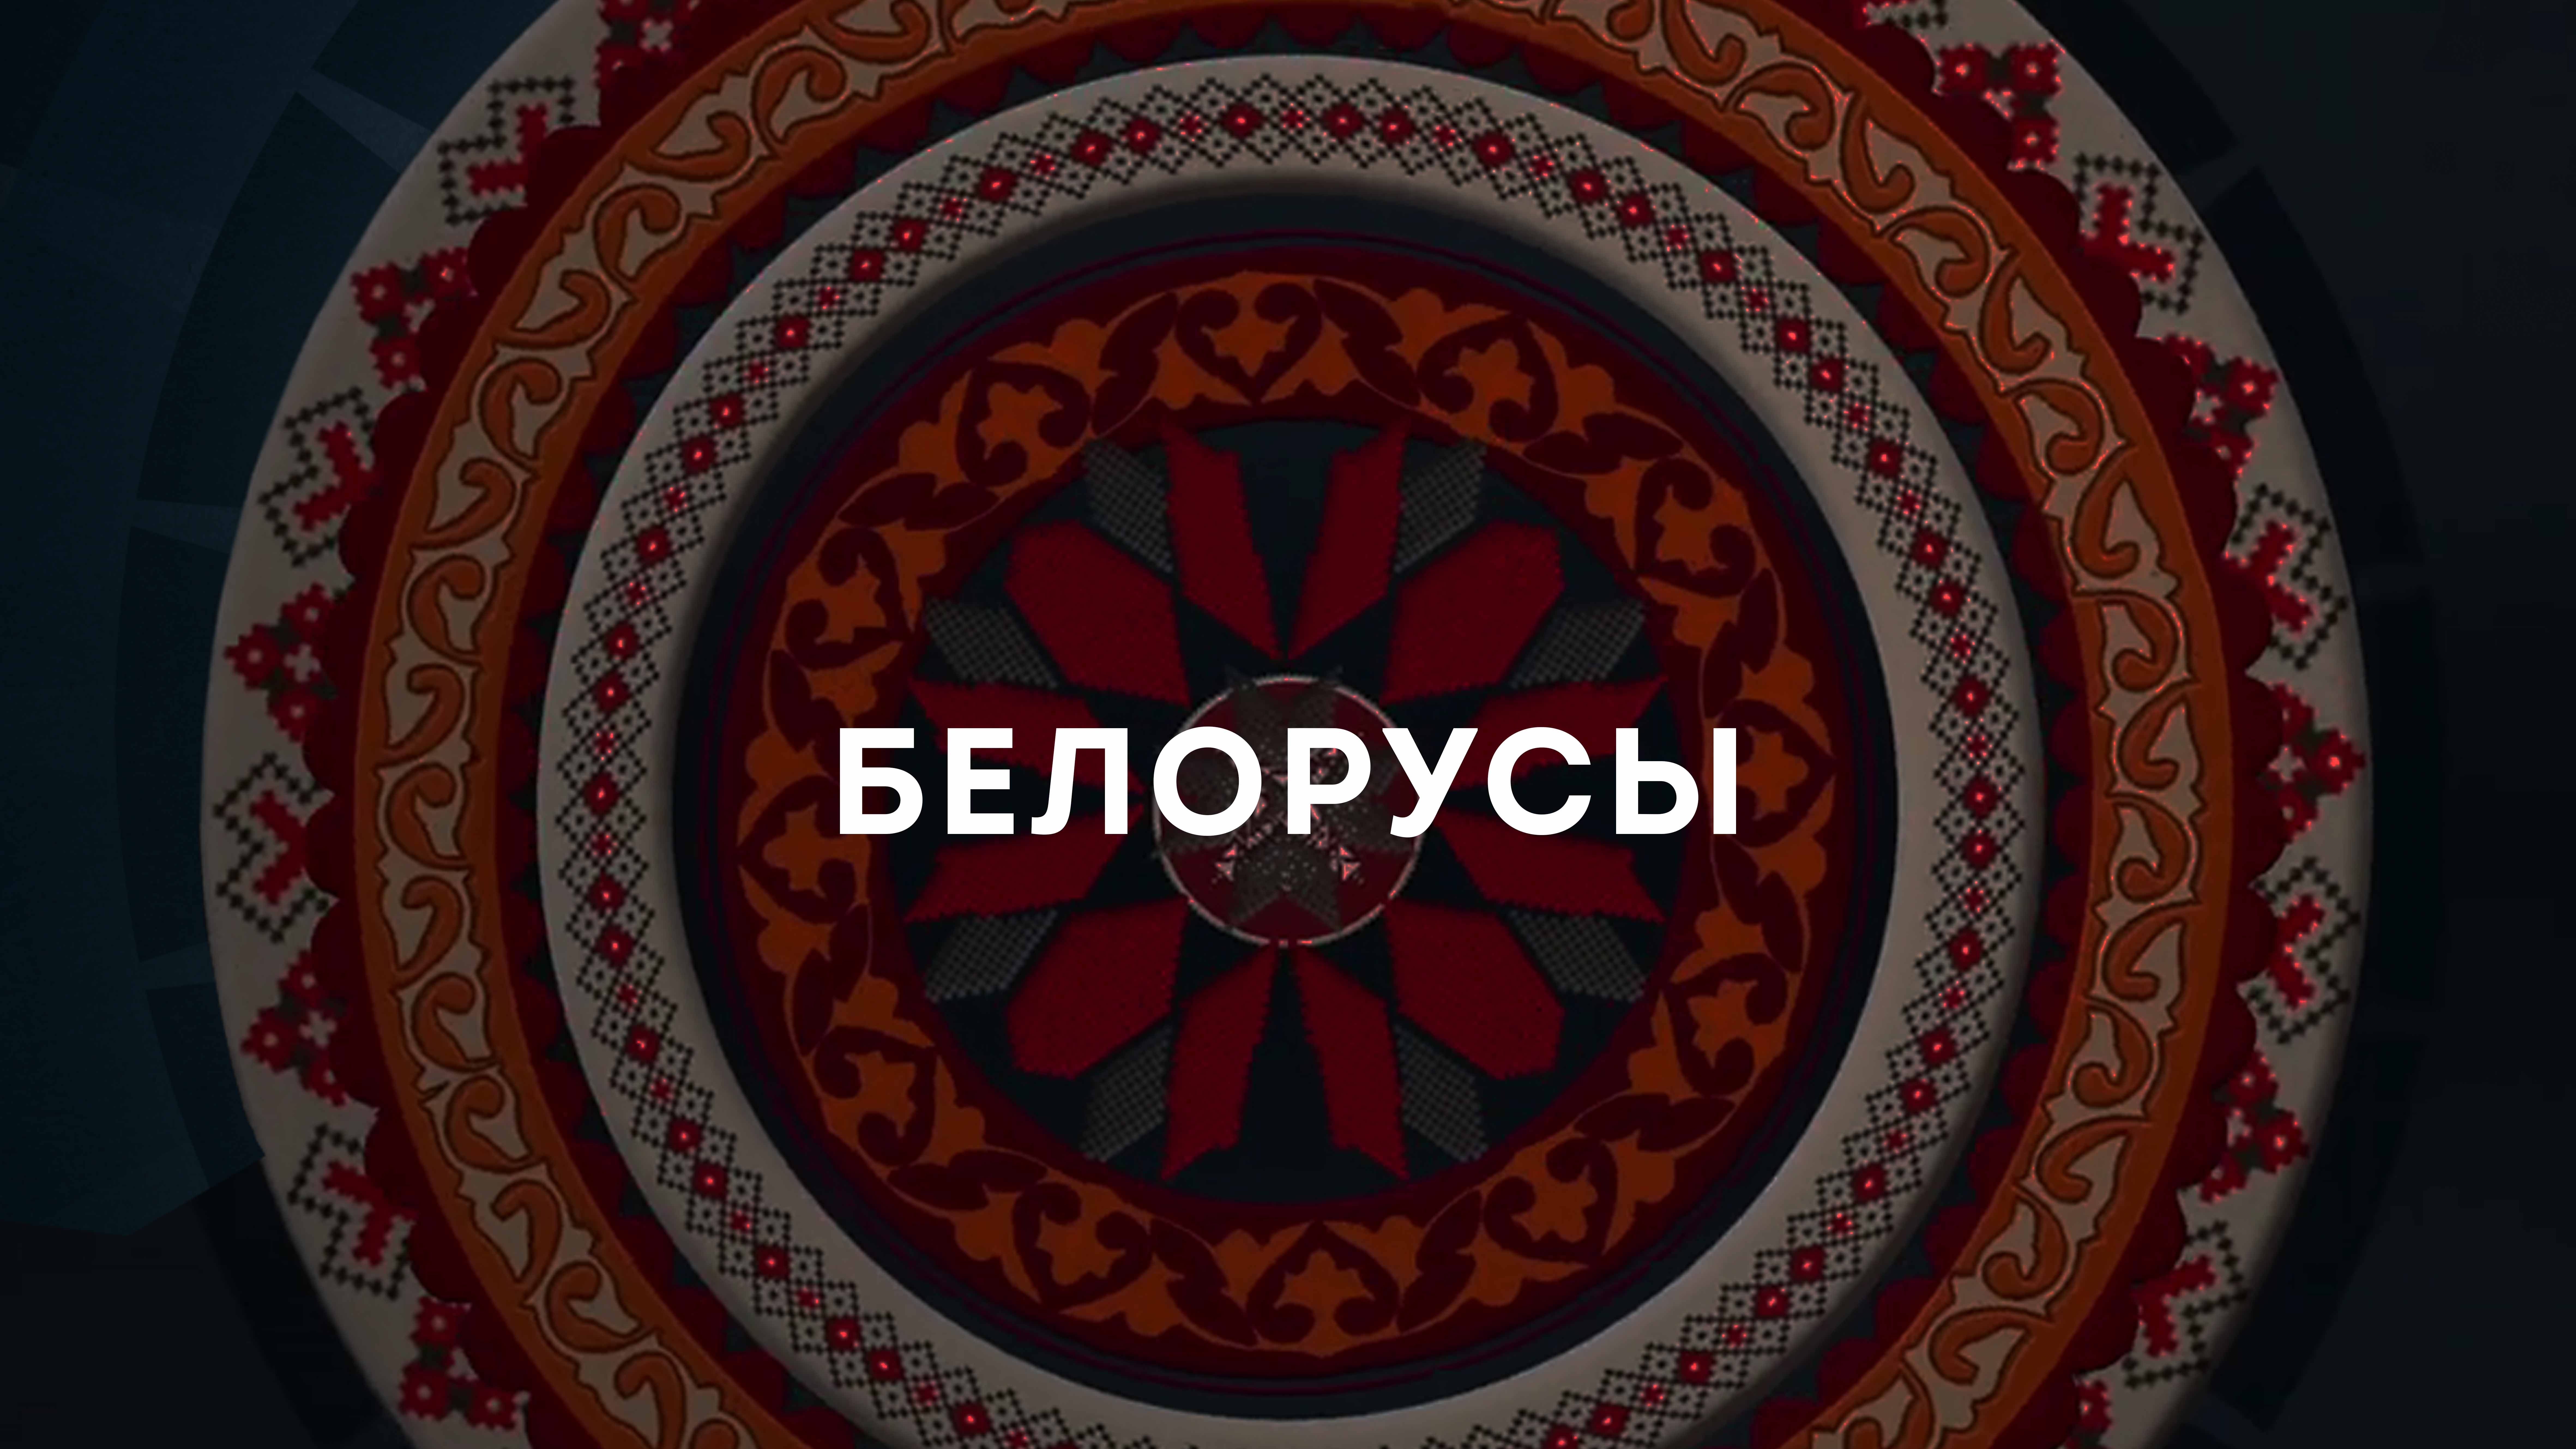 Видеоальманах Дружбы. Белорусы